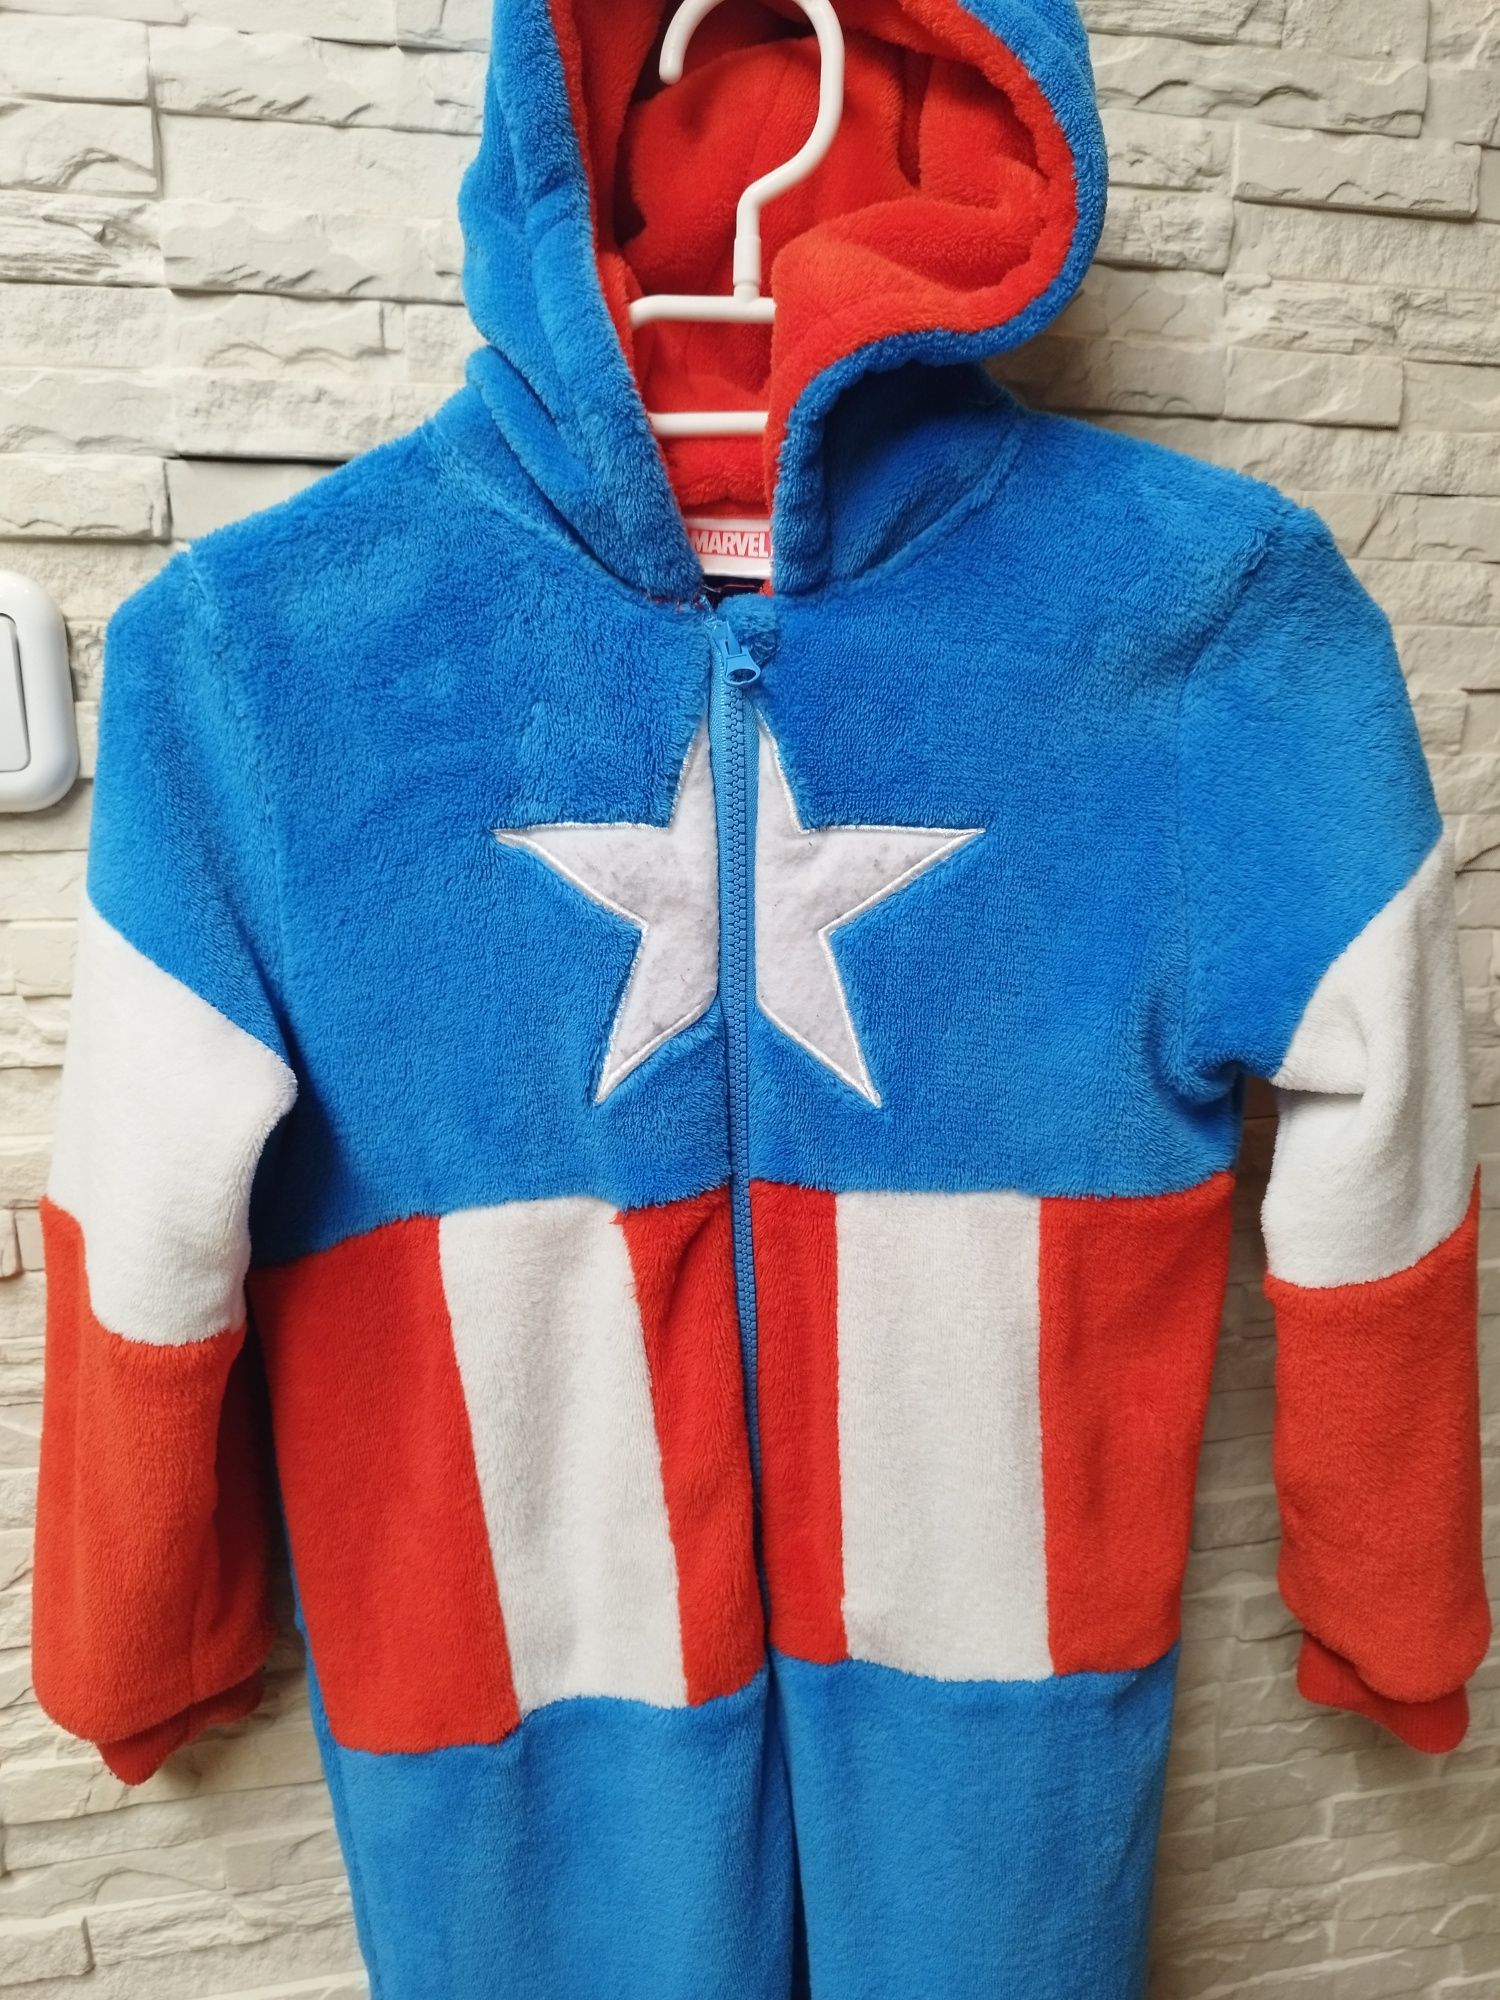 ?Kombinezon,piżama,kigurimi,strój karnawałowy,Avengers Kapitan Ameryka